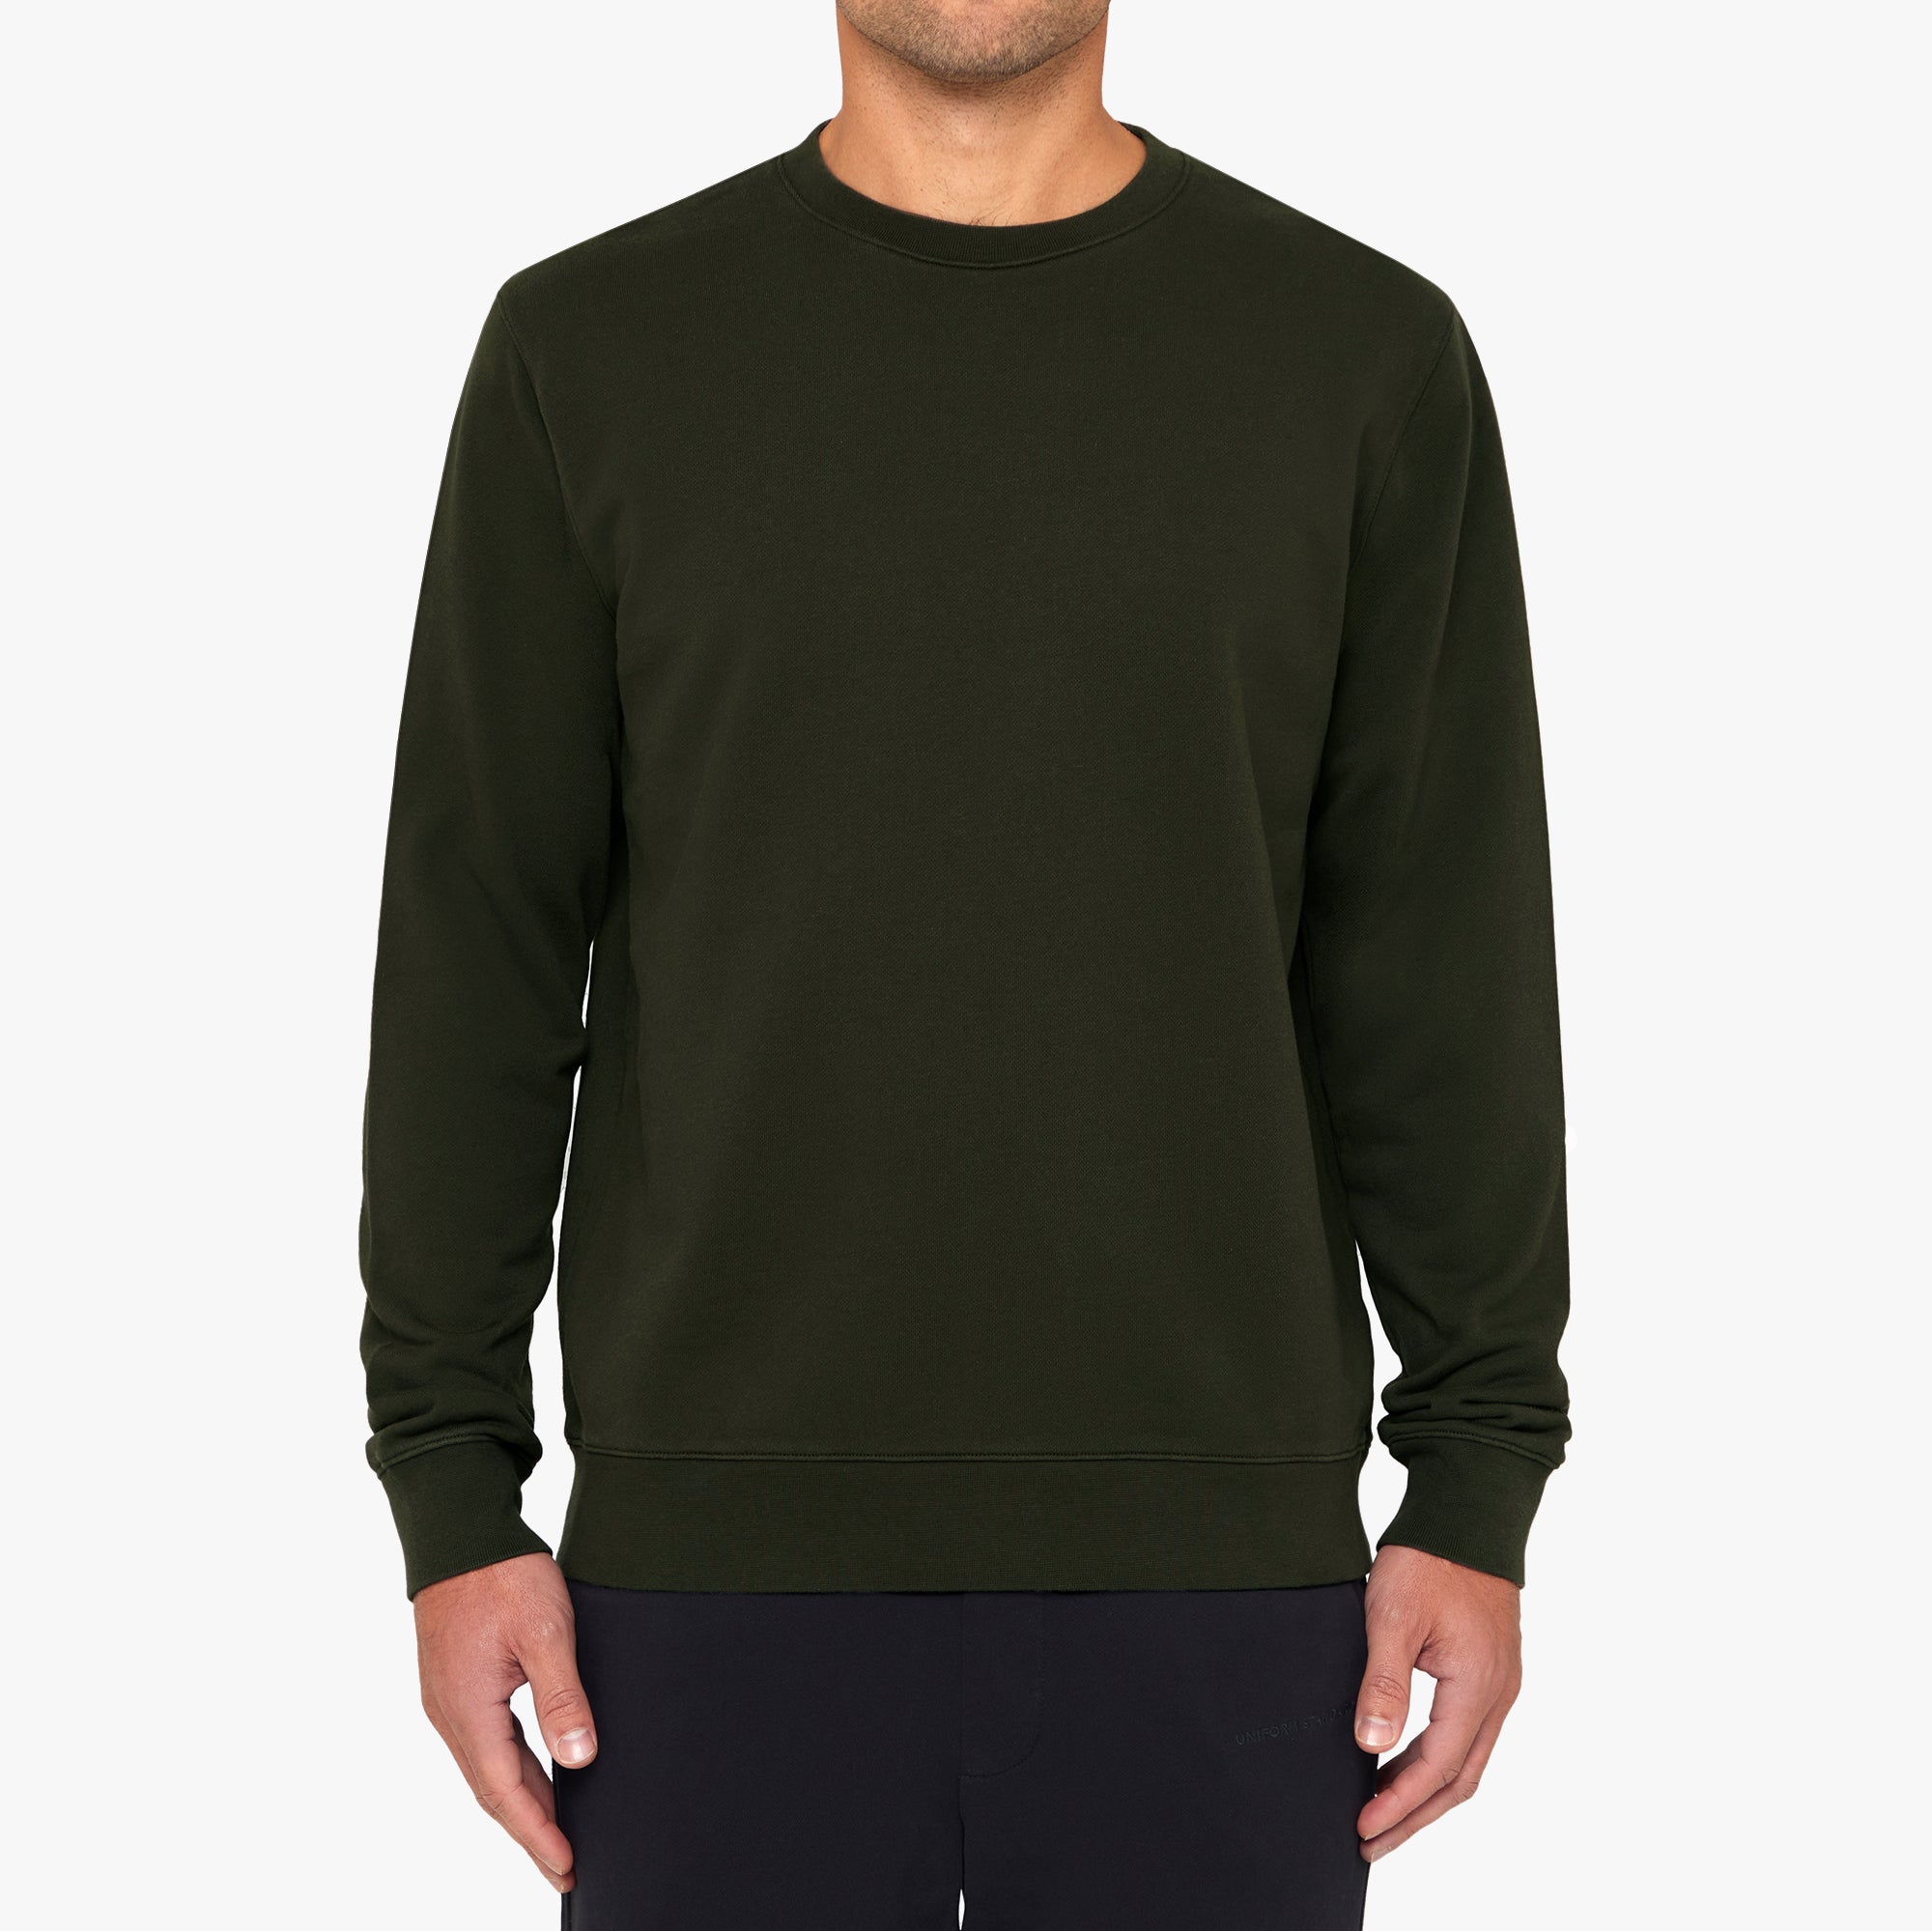 Organic Cotton Fleece Sweatshirt Military